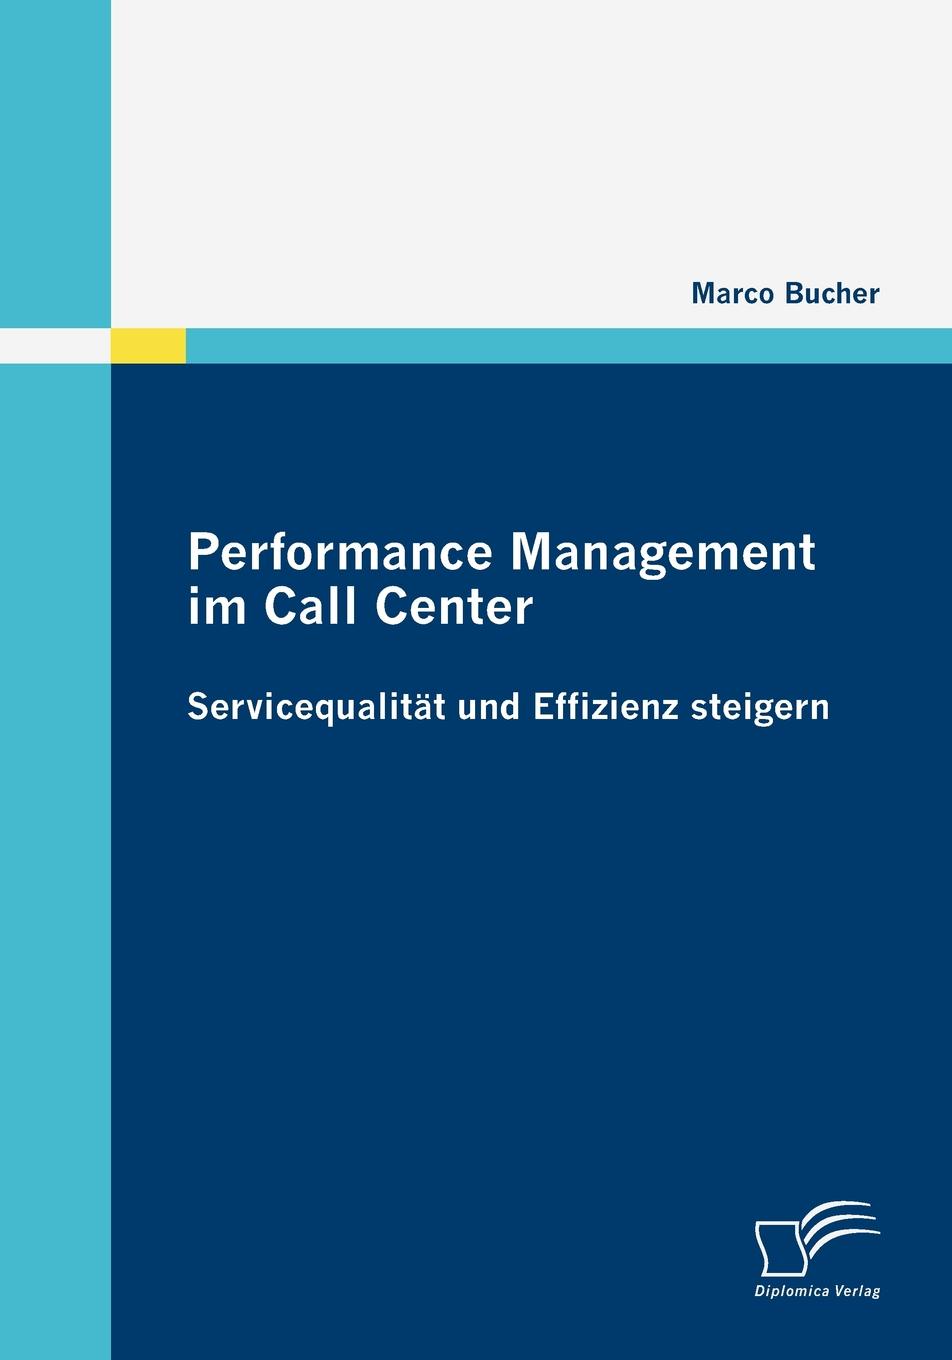 Performance Management im Call Center. Servicequalitat und Effizienz steigern